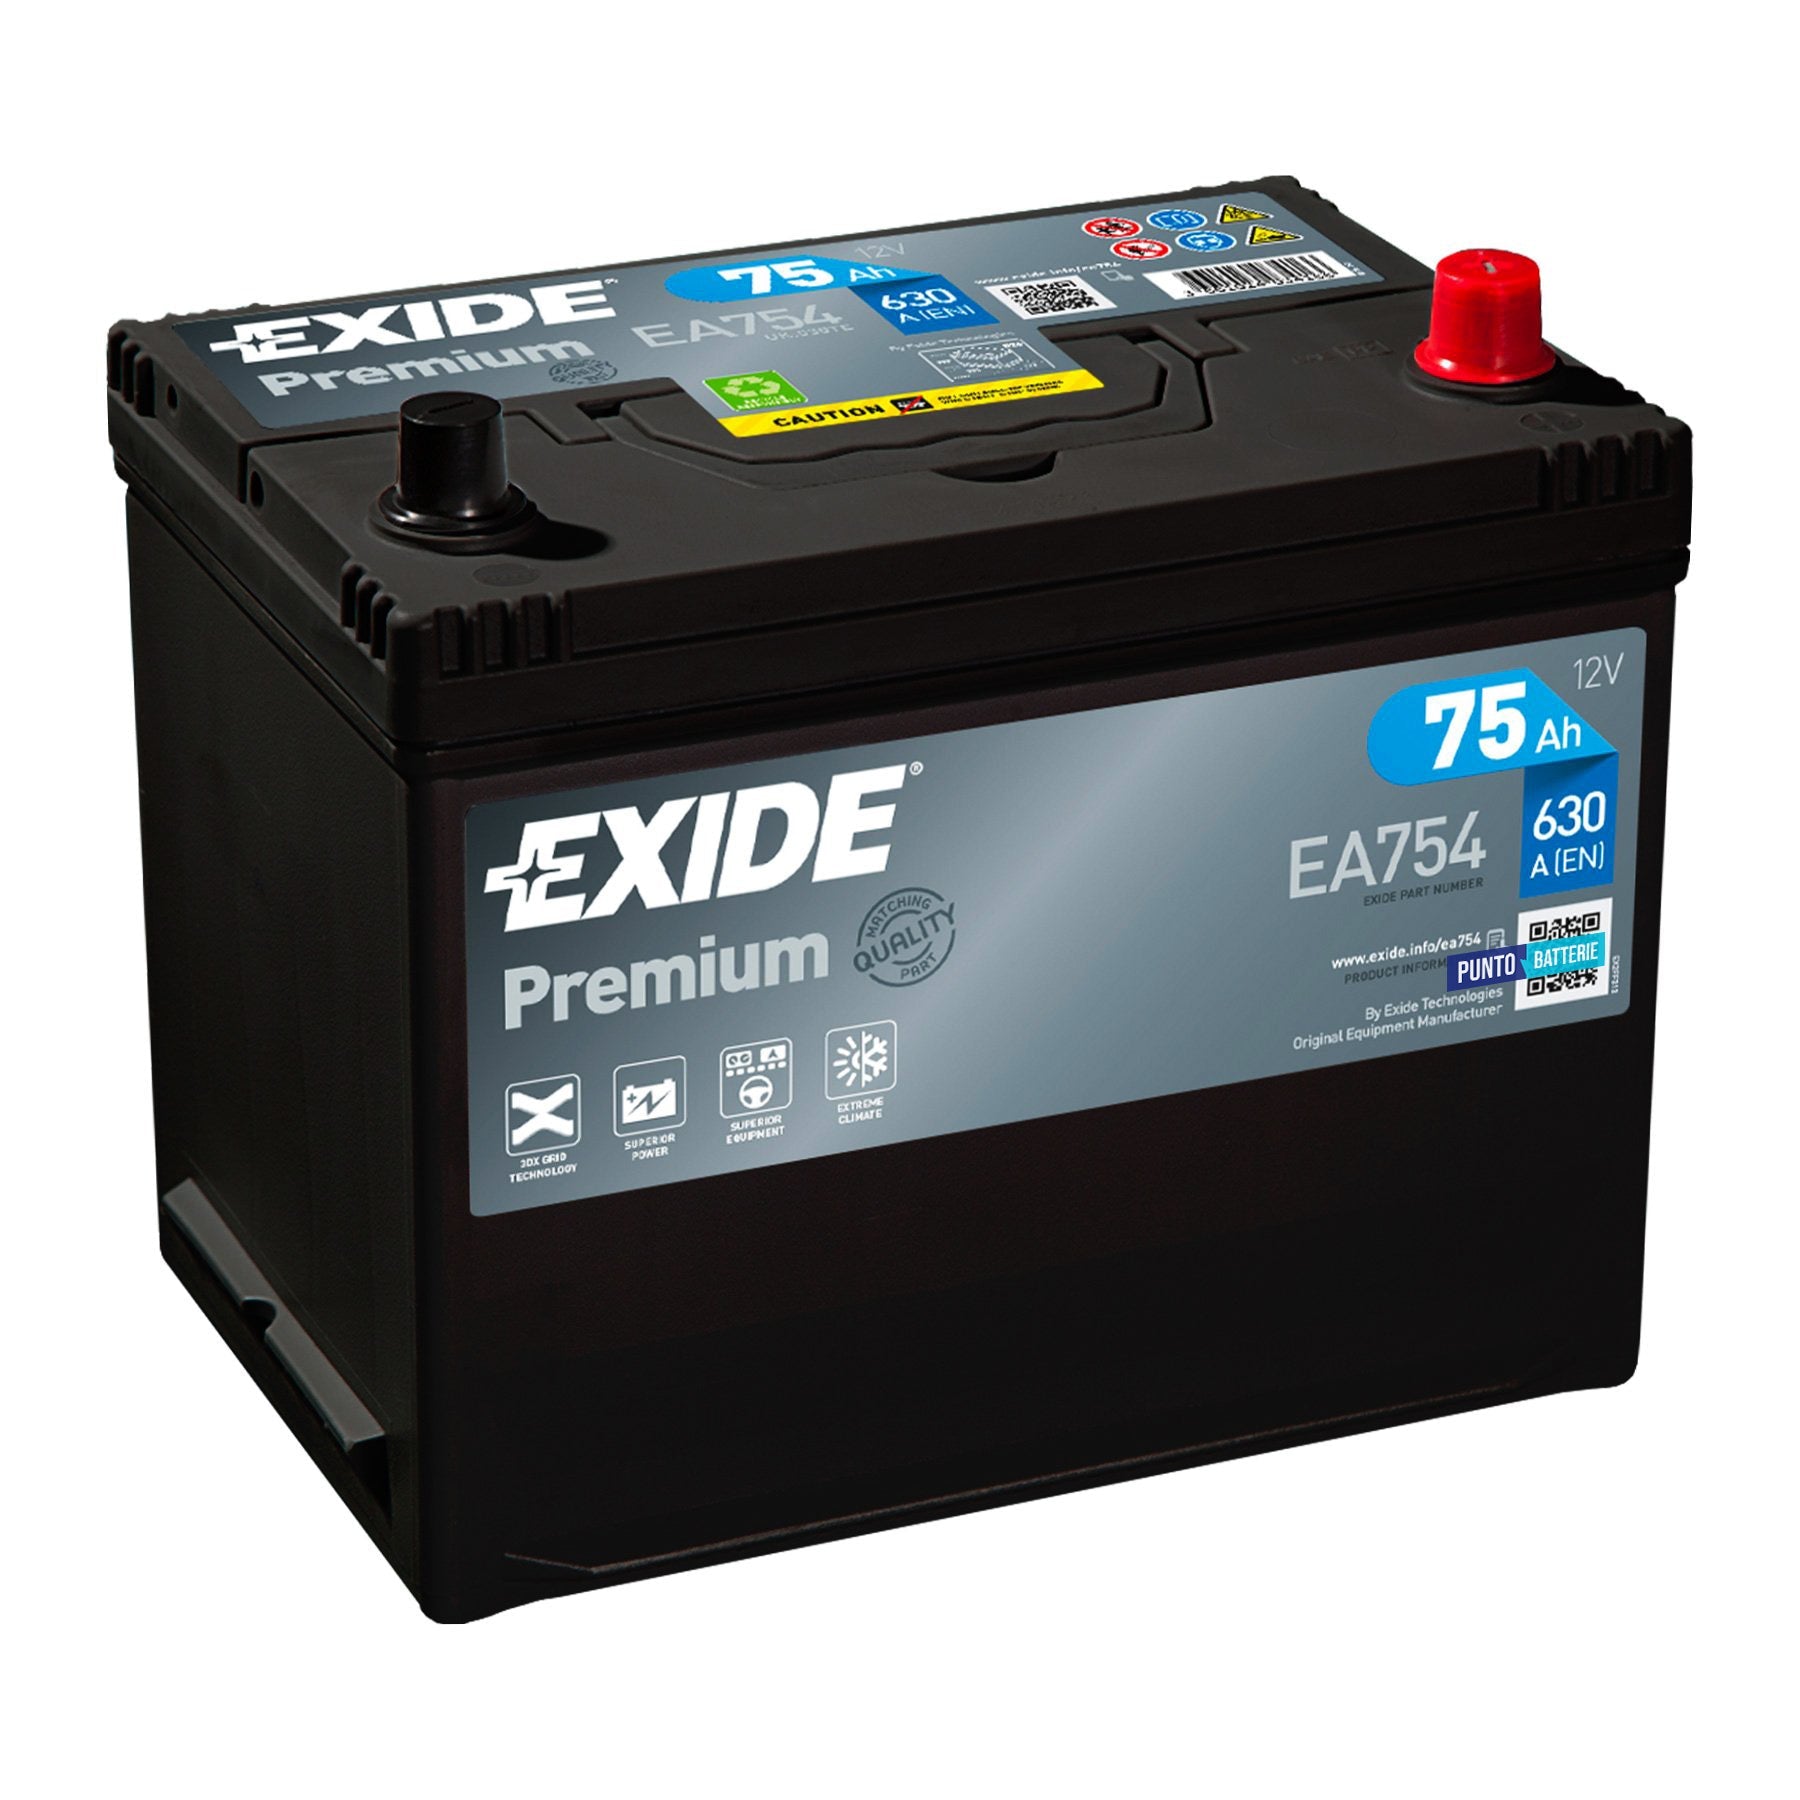 Batteria originale Exide Premium EA754, dimensioni 270 x 173 x 222, polo positivo a destra, 12 volt, 75 amperora, 630 ampere. Batteria per auto e veicoli leggeri.